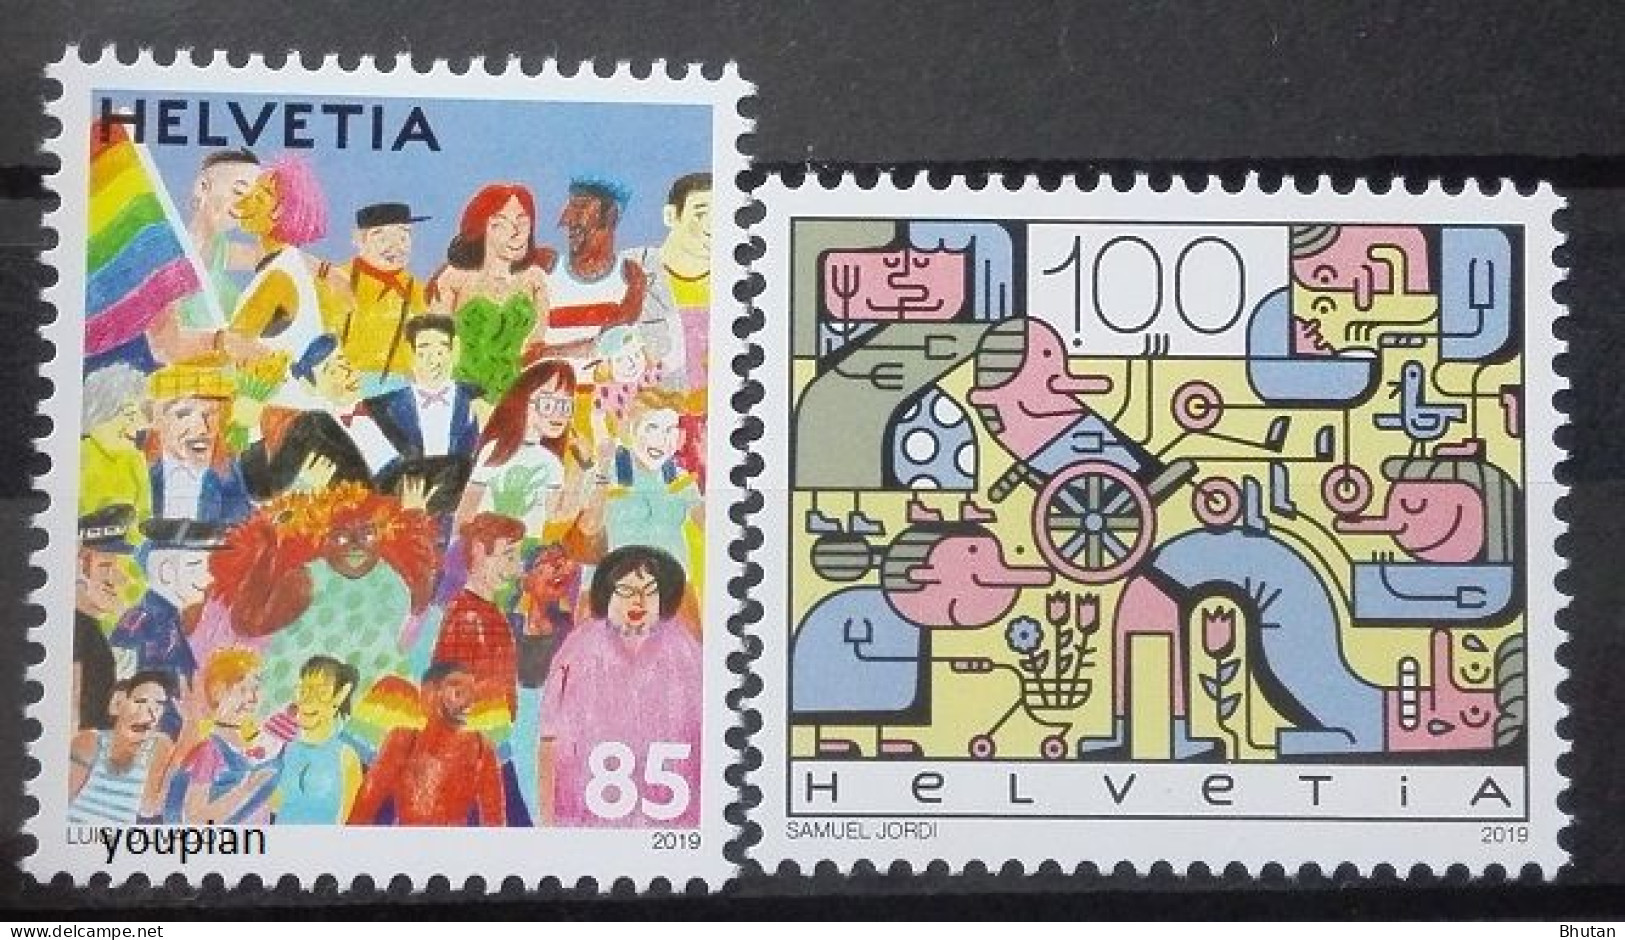 Switzerland 2019, Joint Issue With Liechtenstein, MNH Stamps Set - Ongebruikt